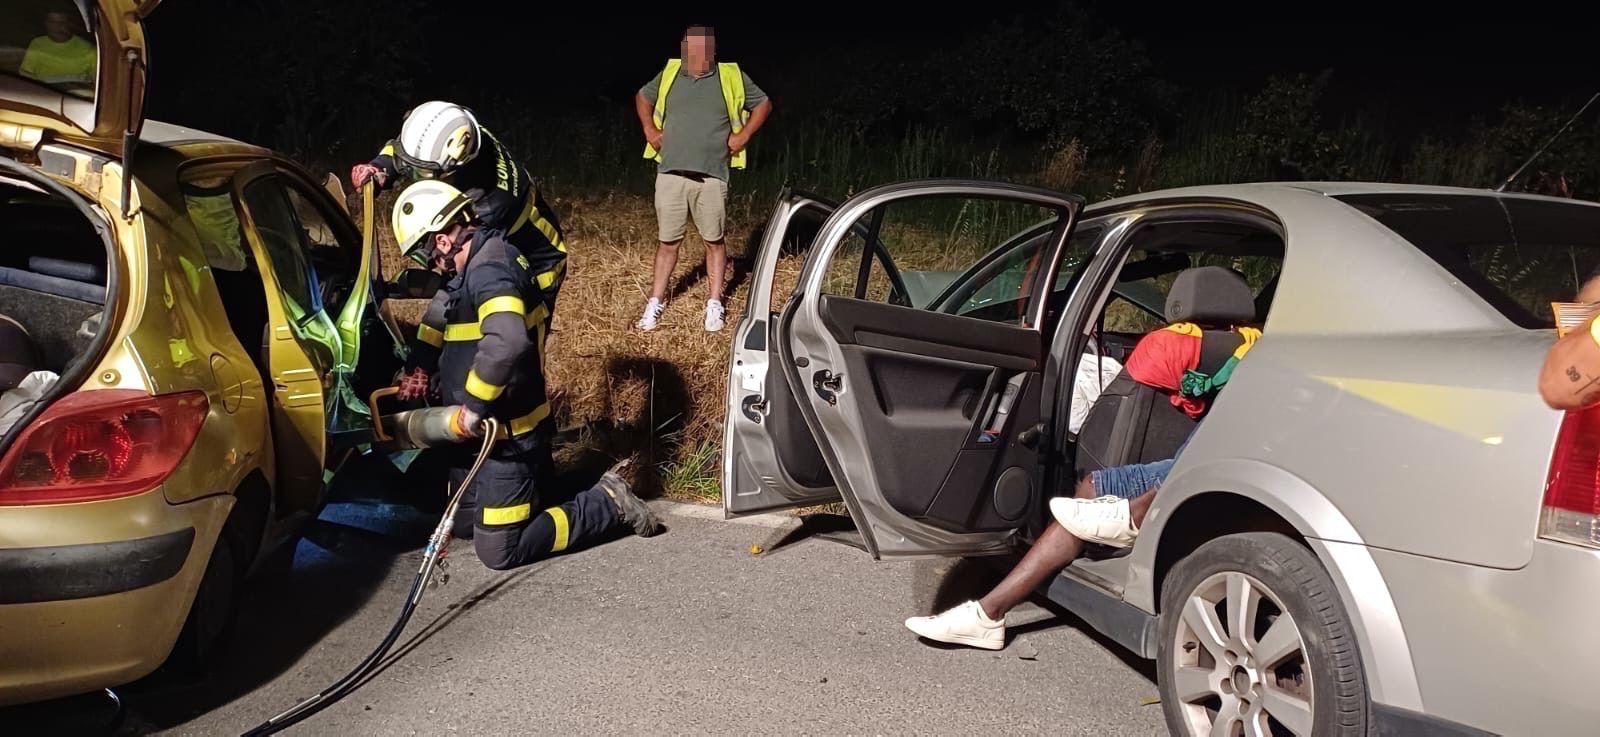 Imagen del accidente. Foto: El blog de Pacurro. Una colisión entre dos turismos en San Roque deja seis heridos, tres de ellos menores